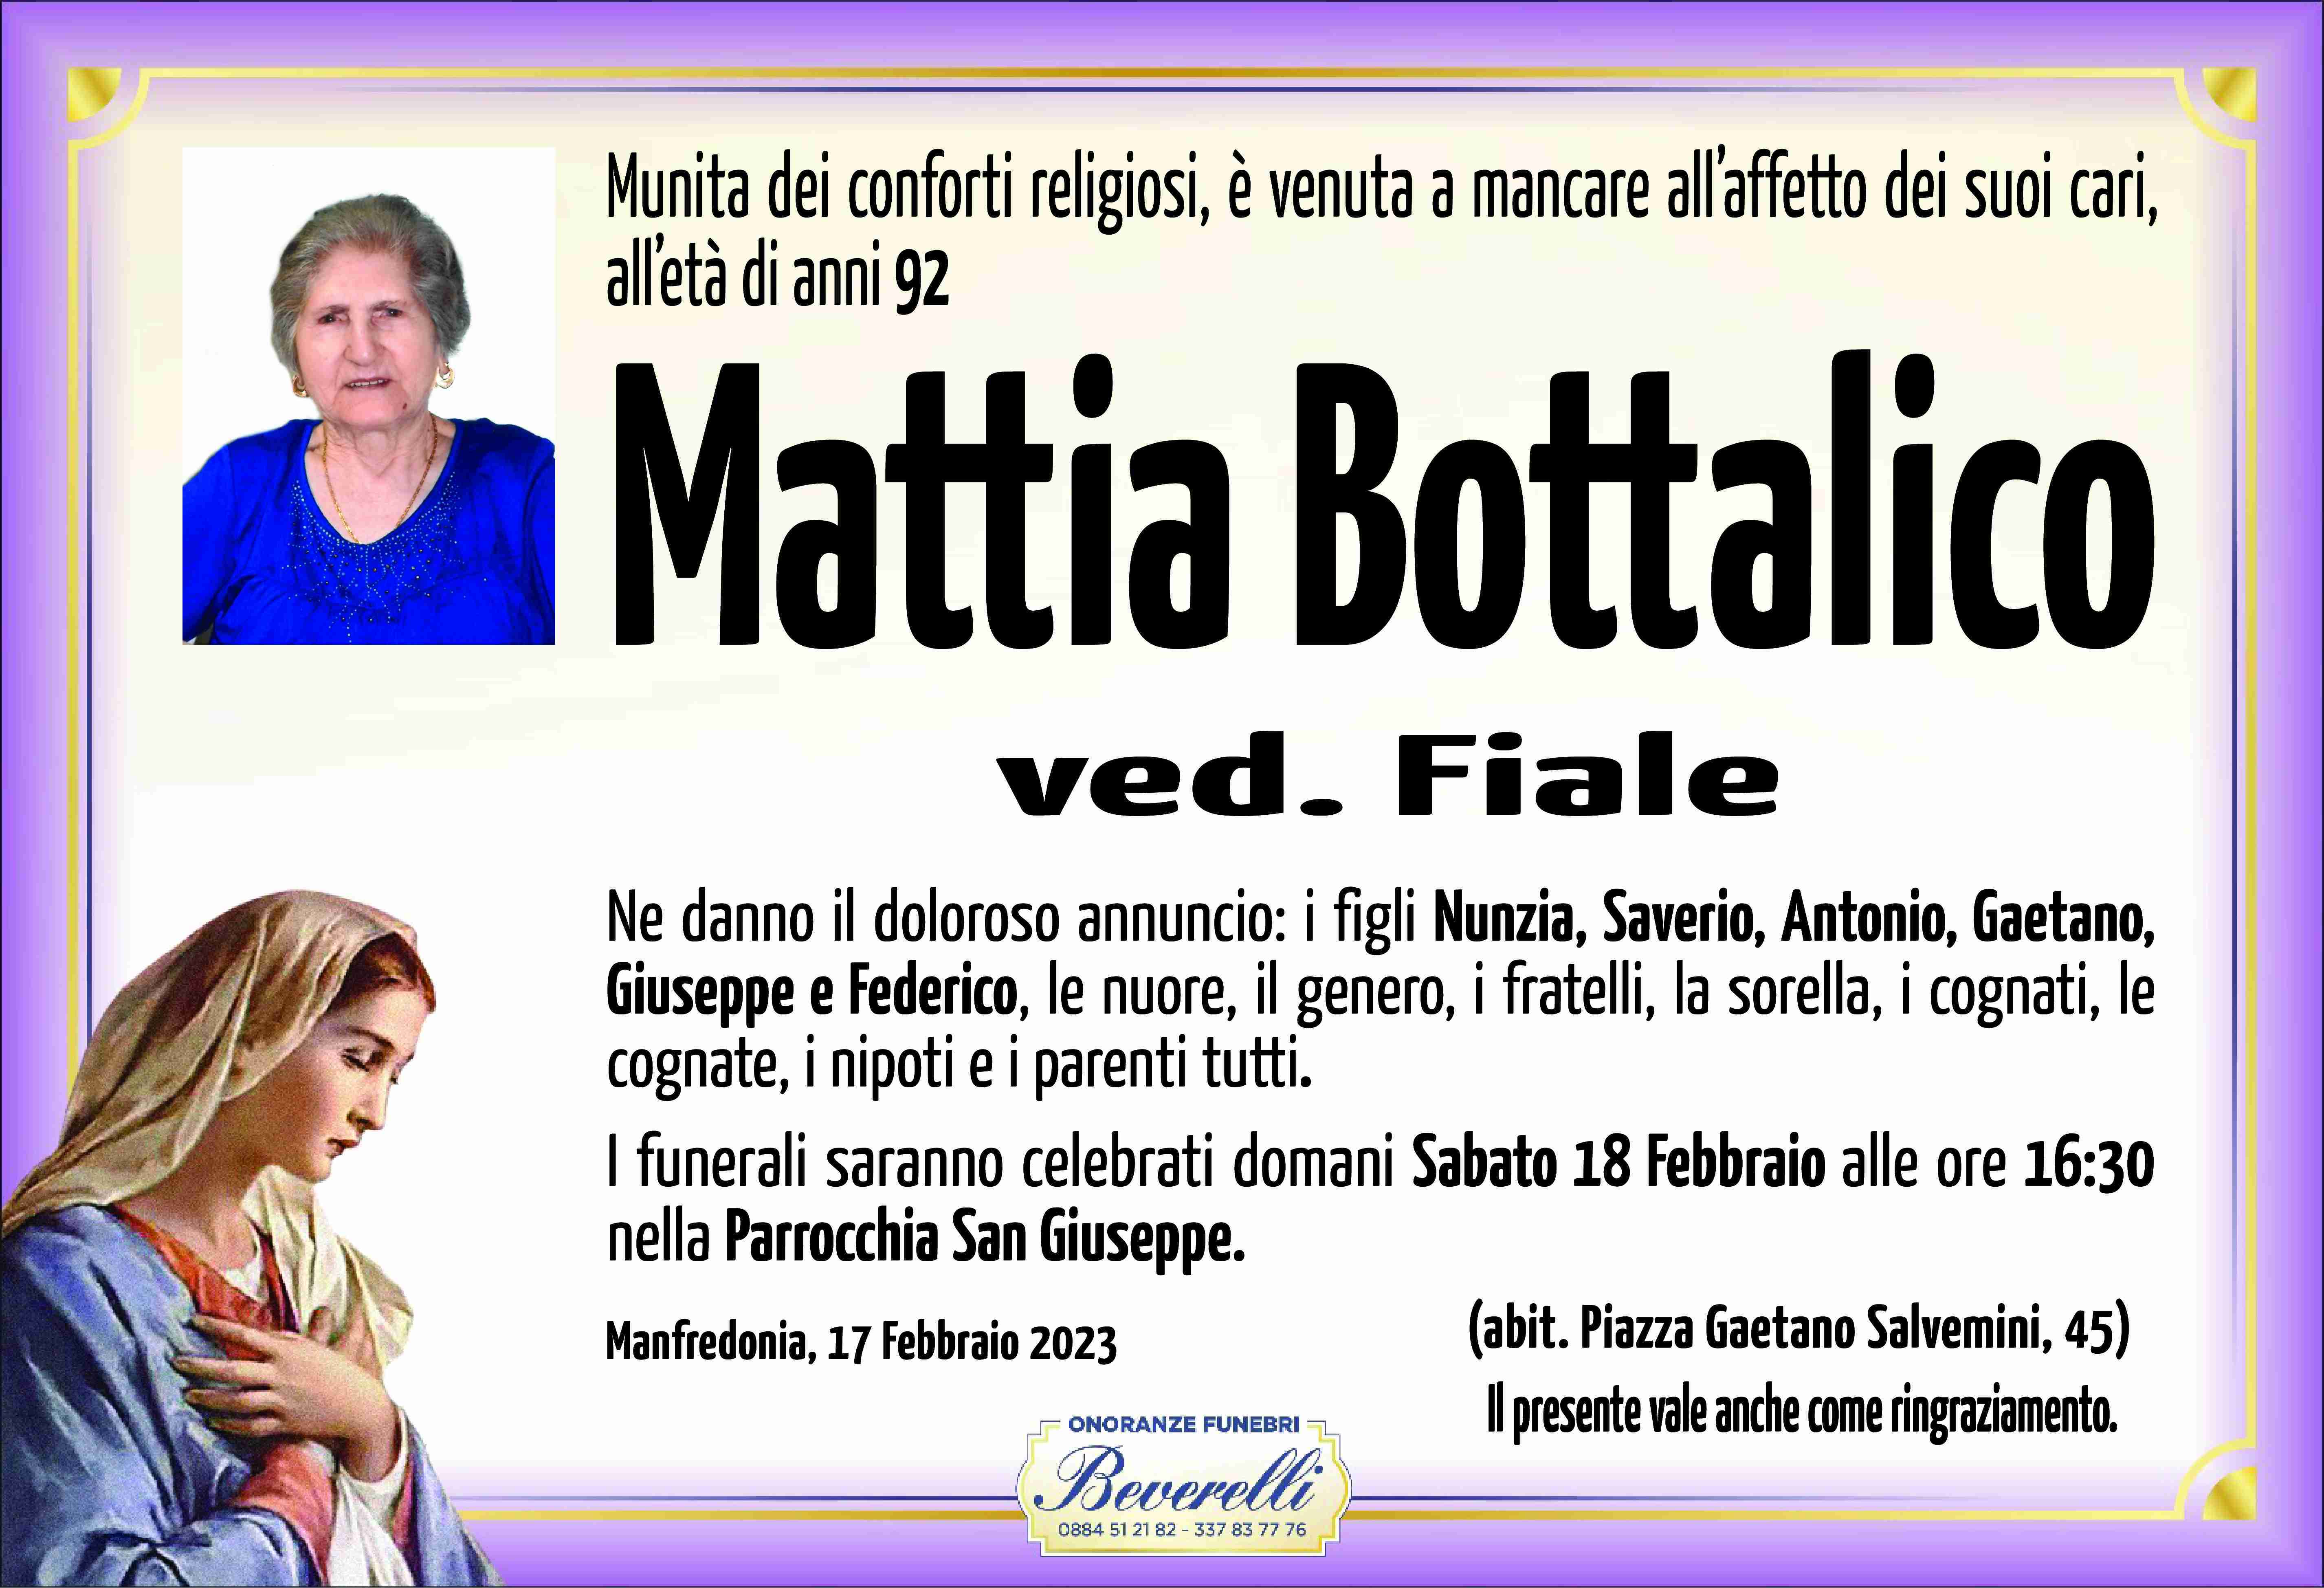 Mattia Bottalico